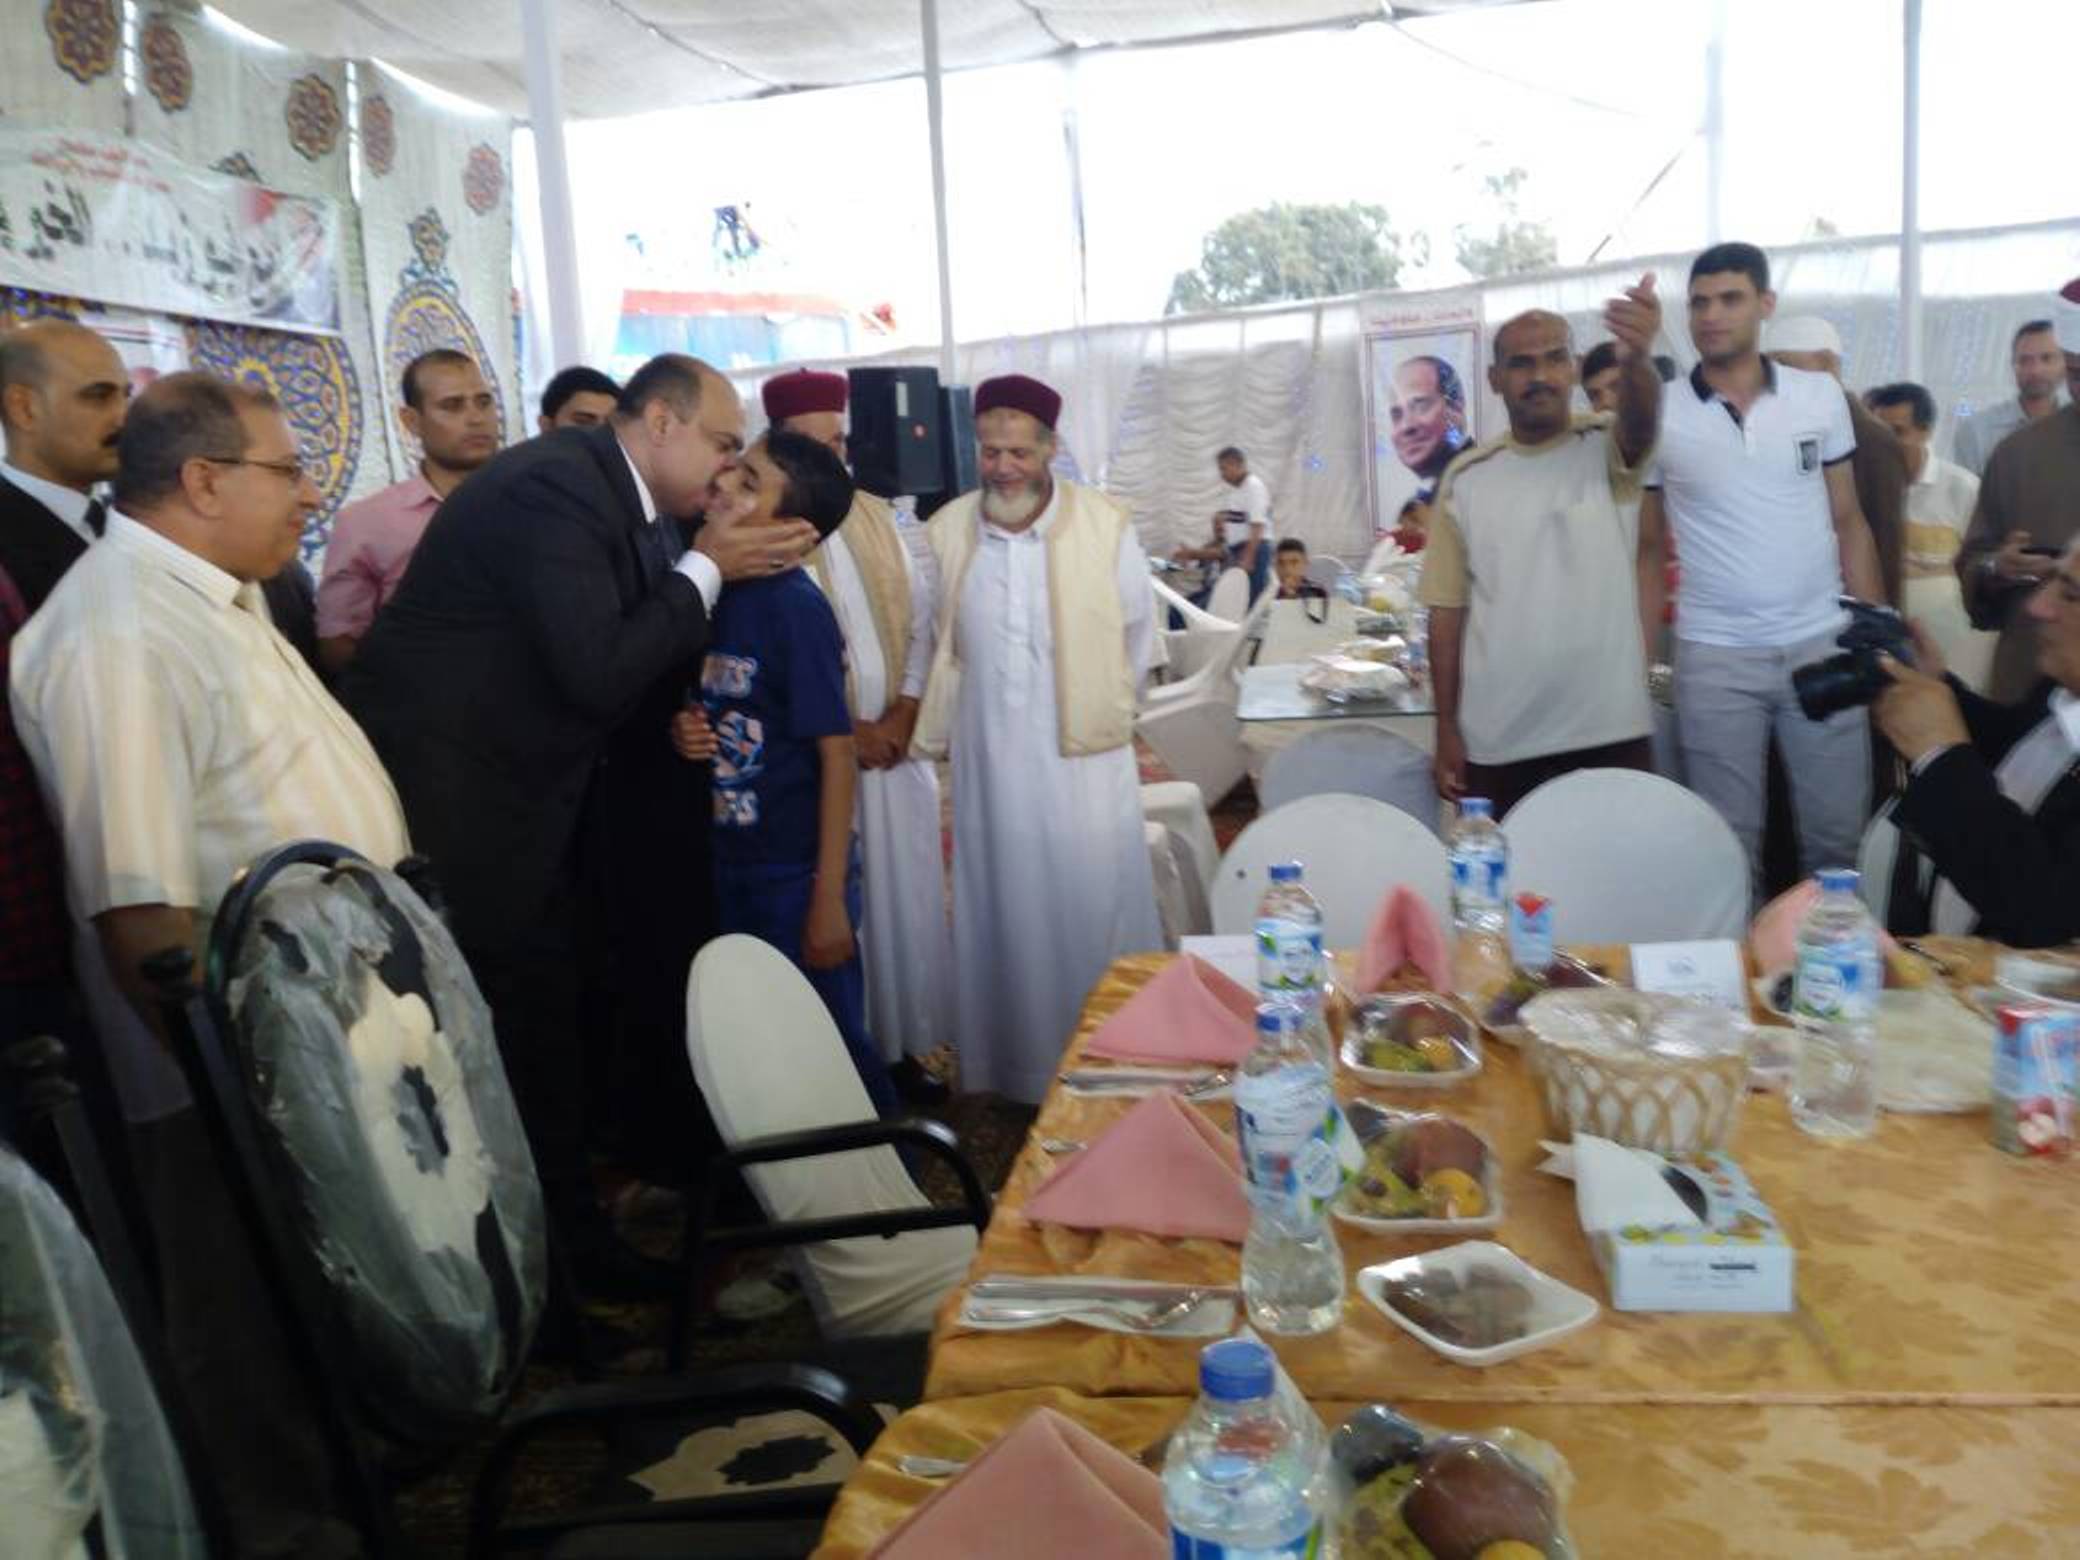 اللواء علاء ابو زيد يقبل طفل يتيم اثناء اهدائه تابلت